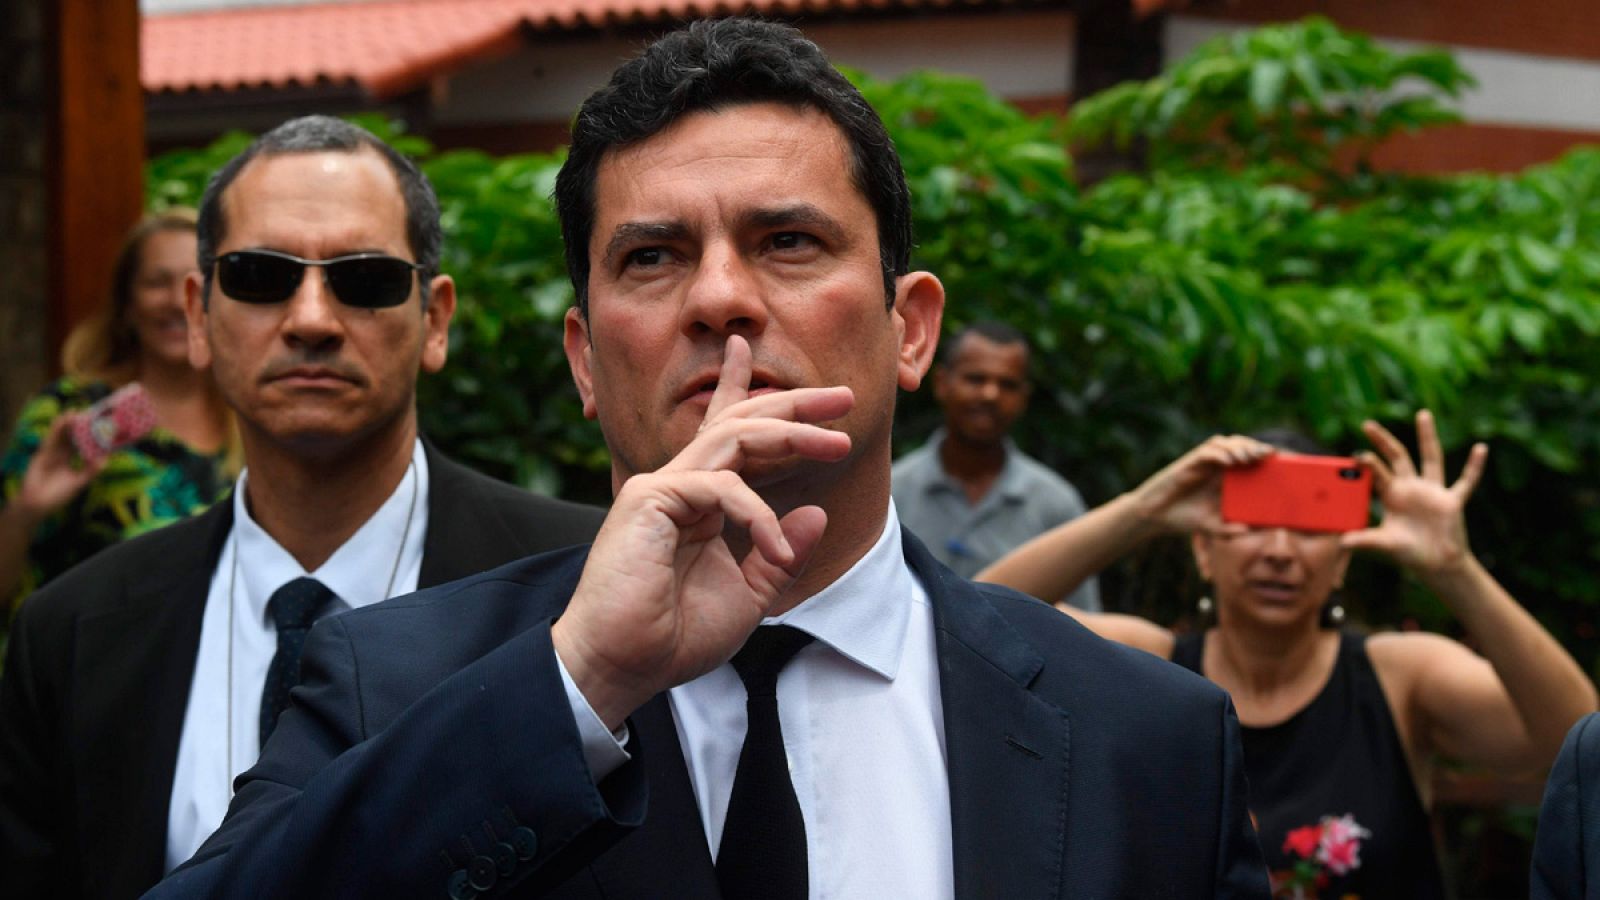 El juez Moro, a su salida de la vivienda del presidente electo de Brasil, Jair Bolsonaro